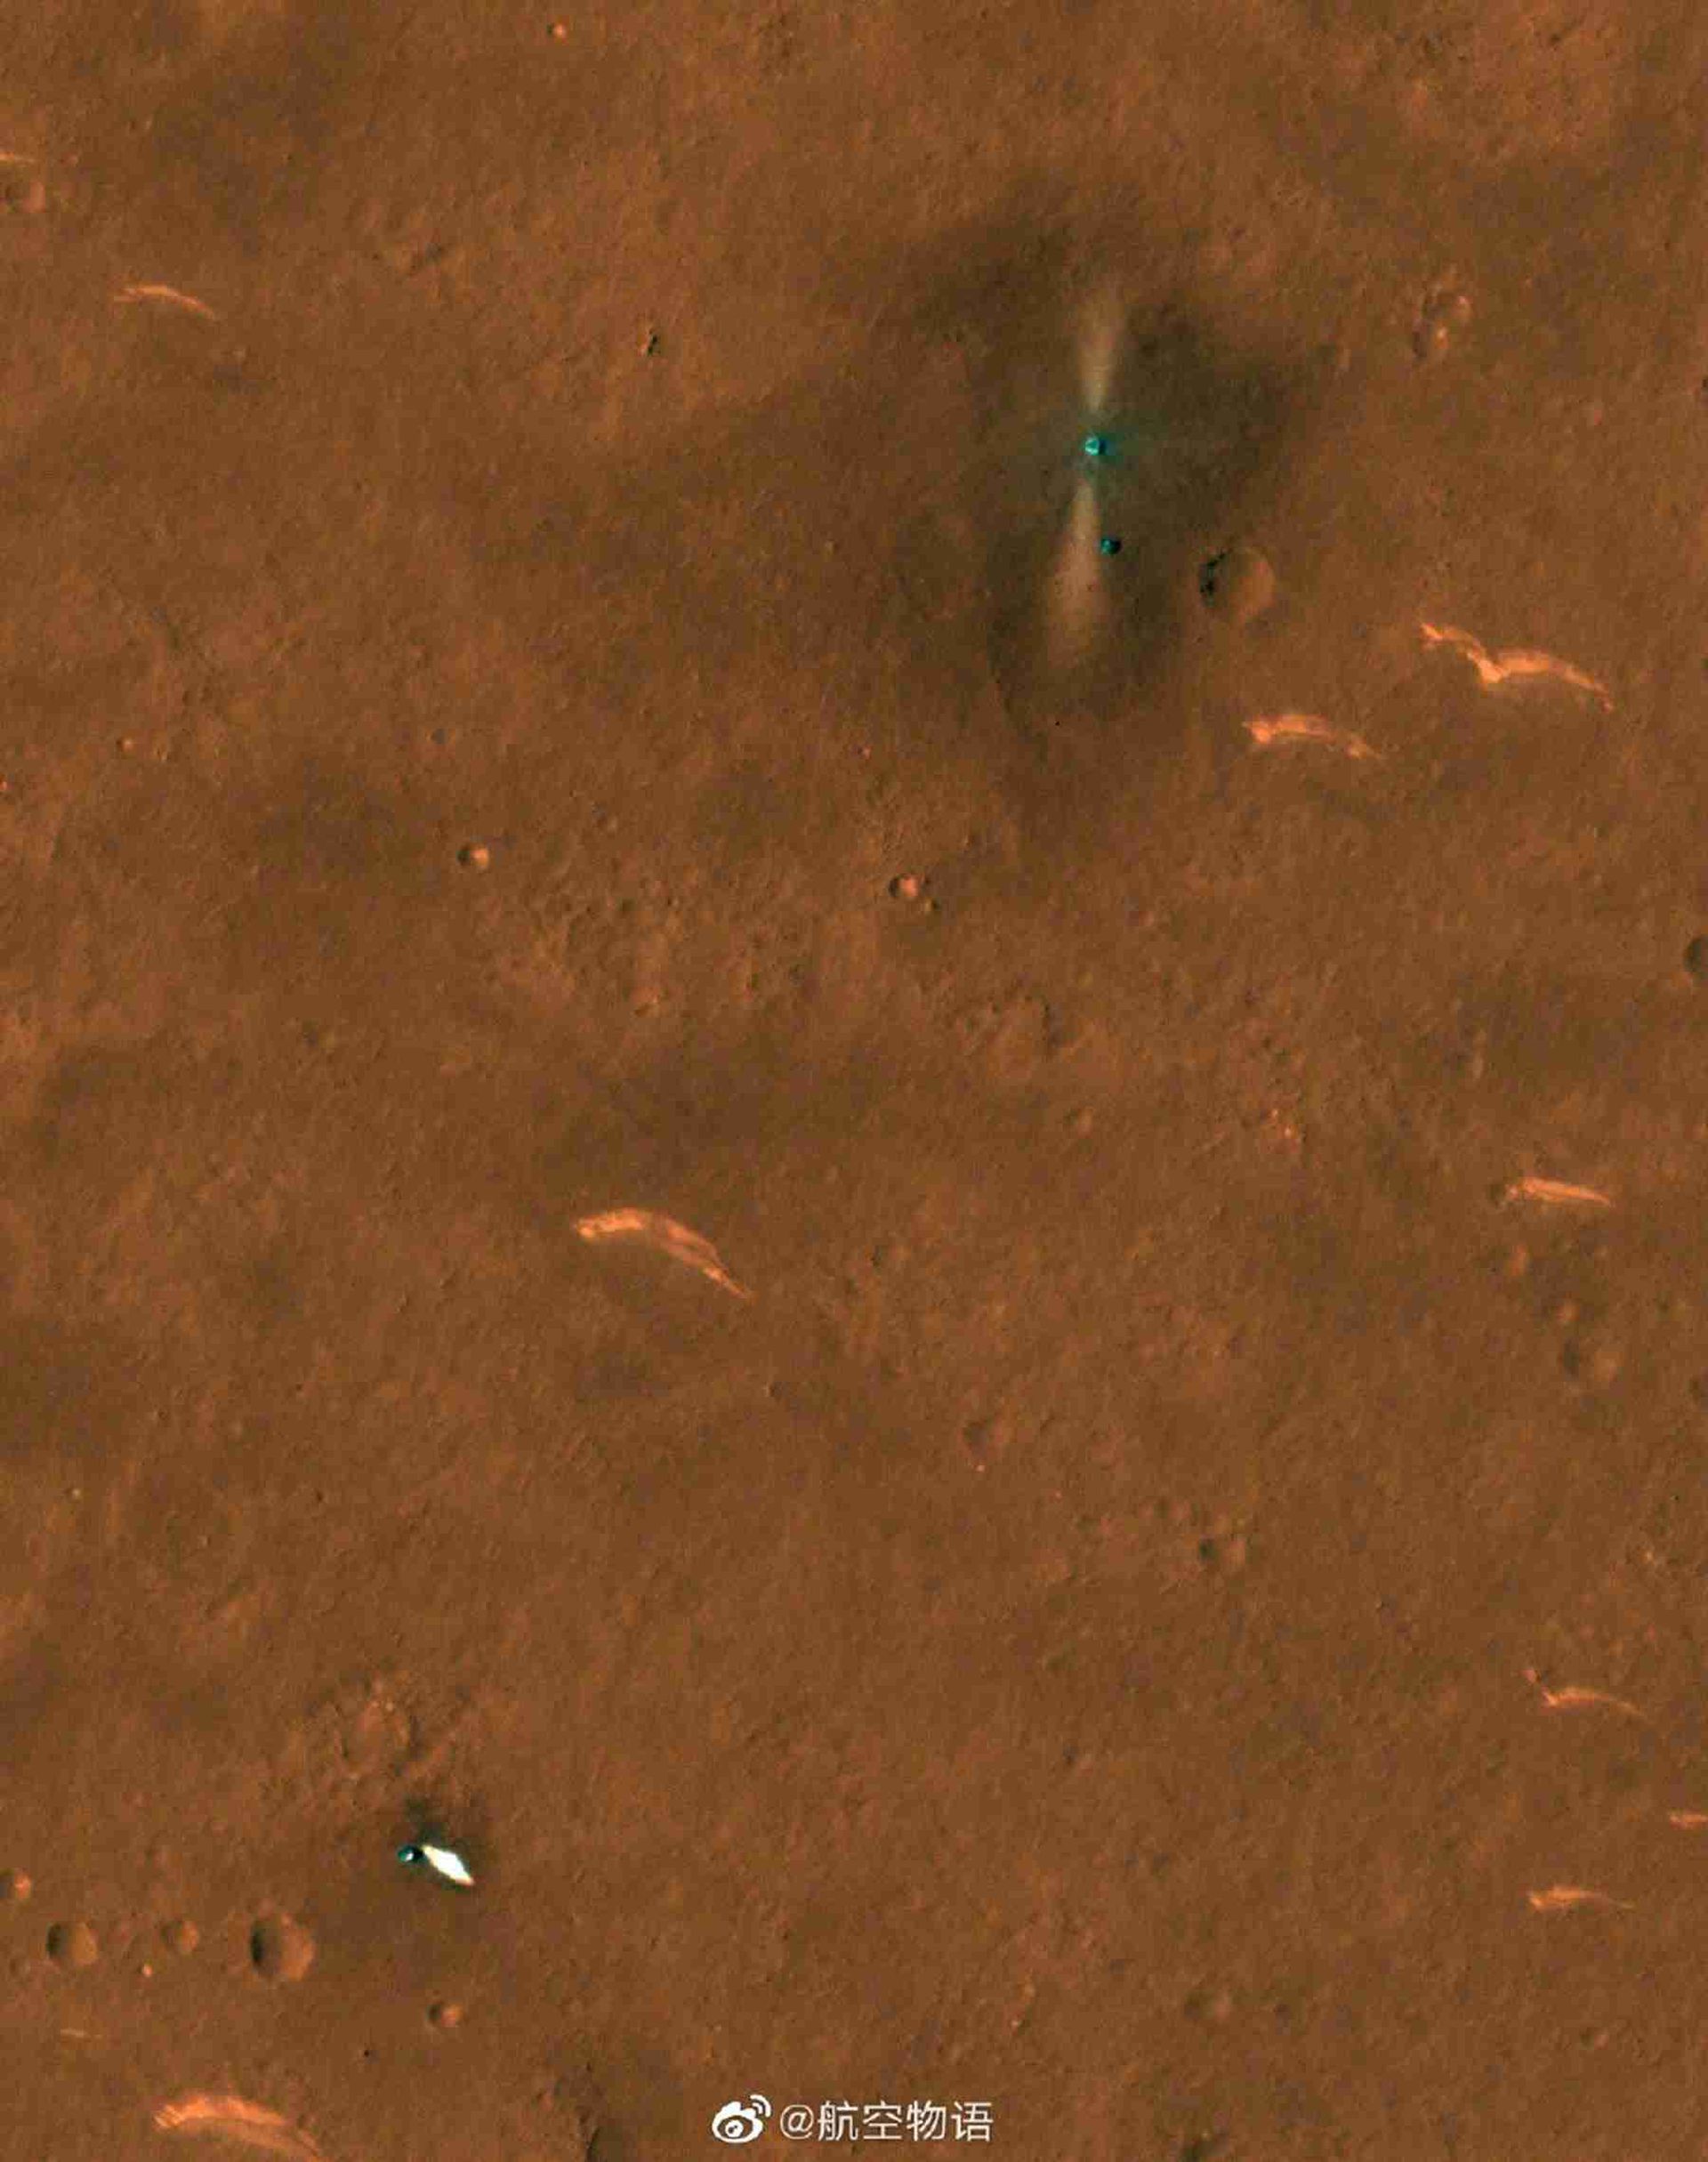 网传美国火星勘测轨道器高清相机拍到的中国火星着陆器和“祝融号”火星车。（微博@航空物语）